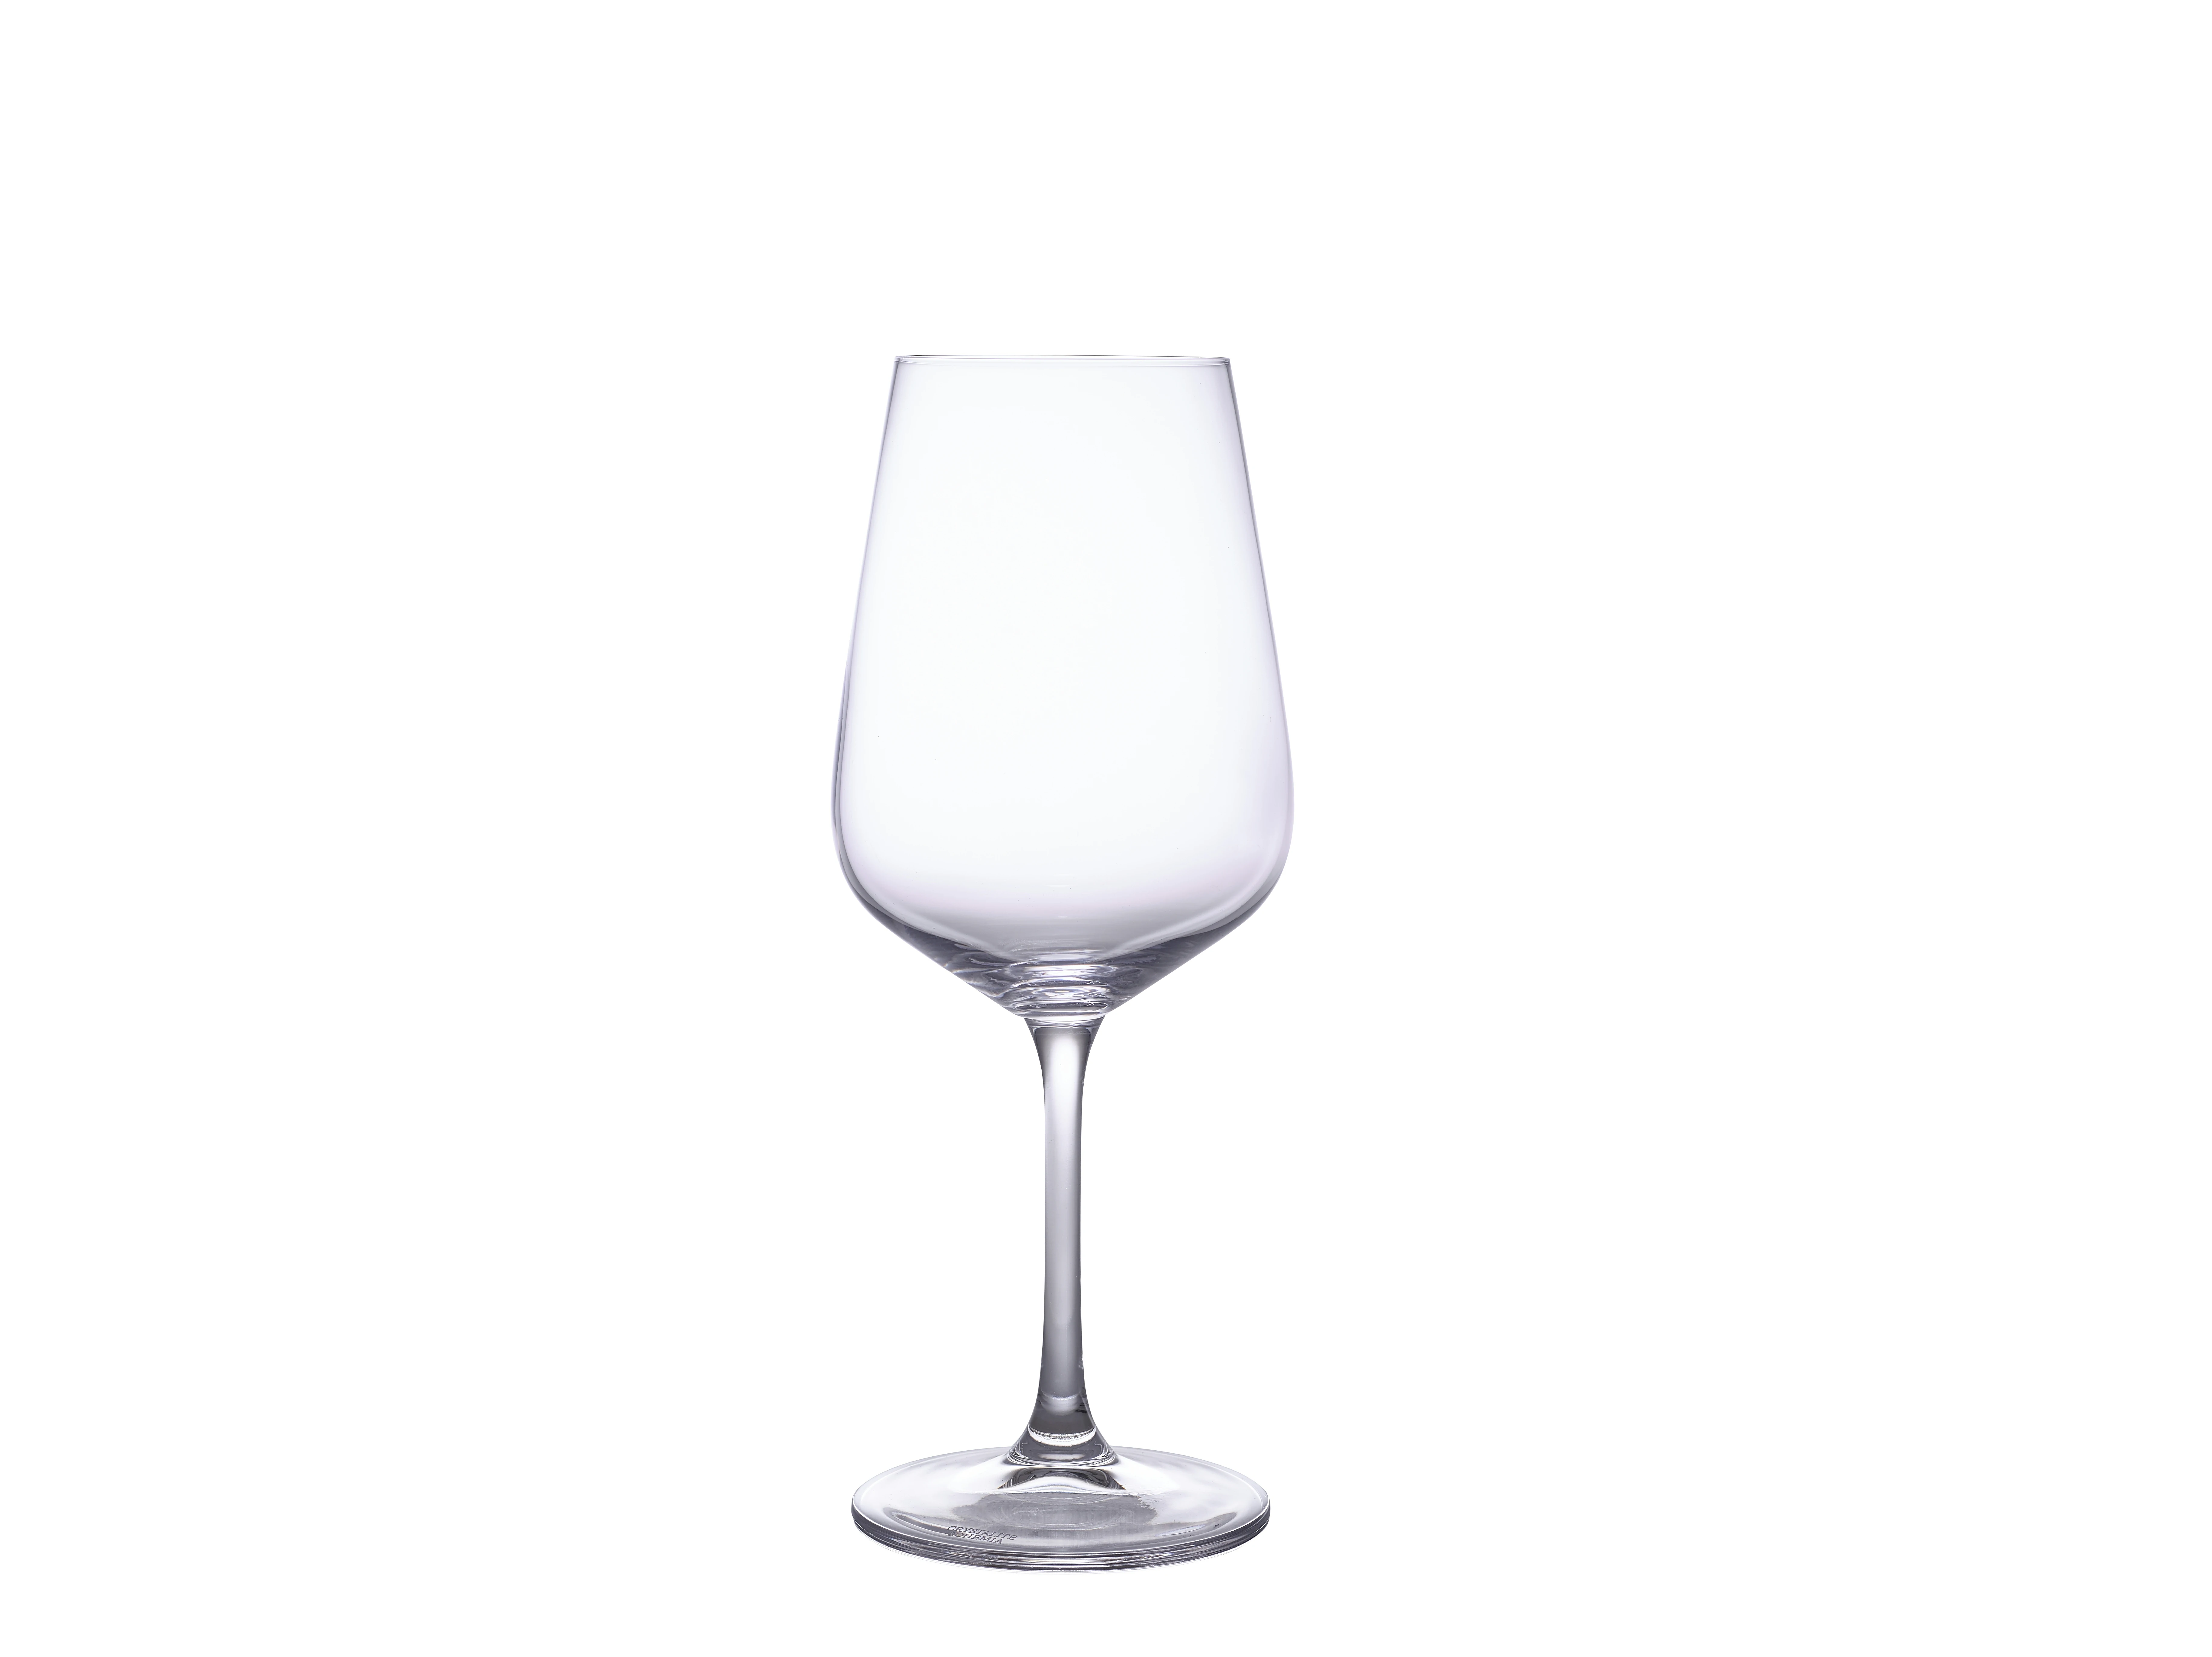 Strix Wine Glass 45cl/15.8oz